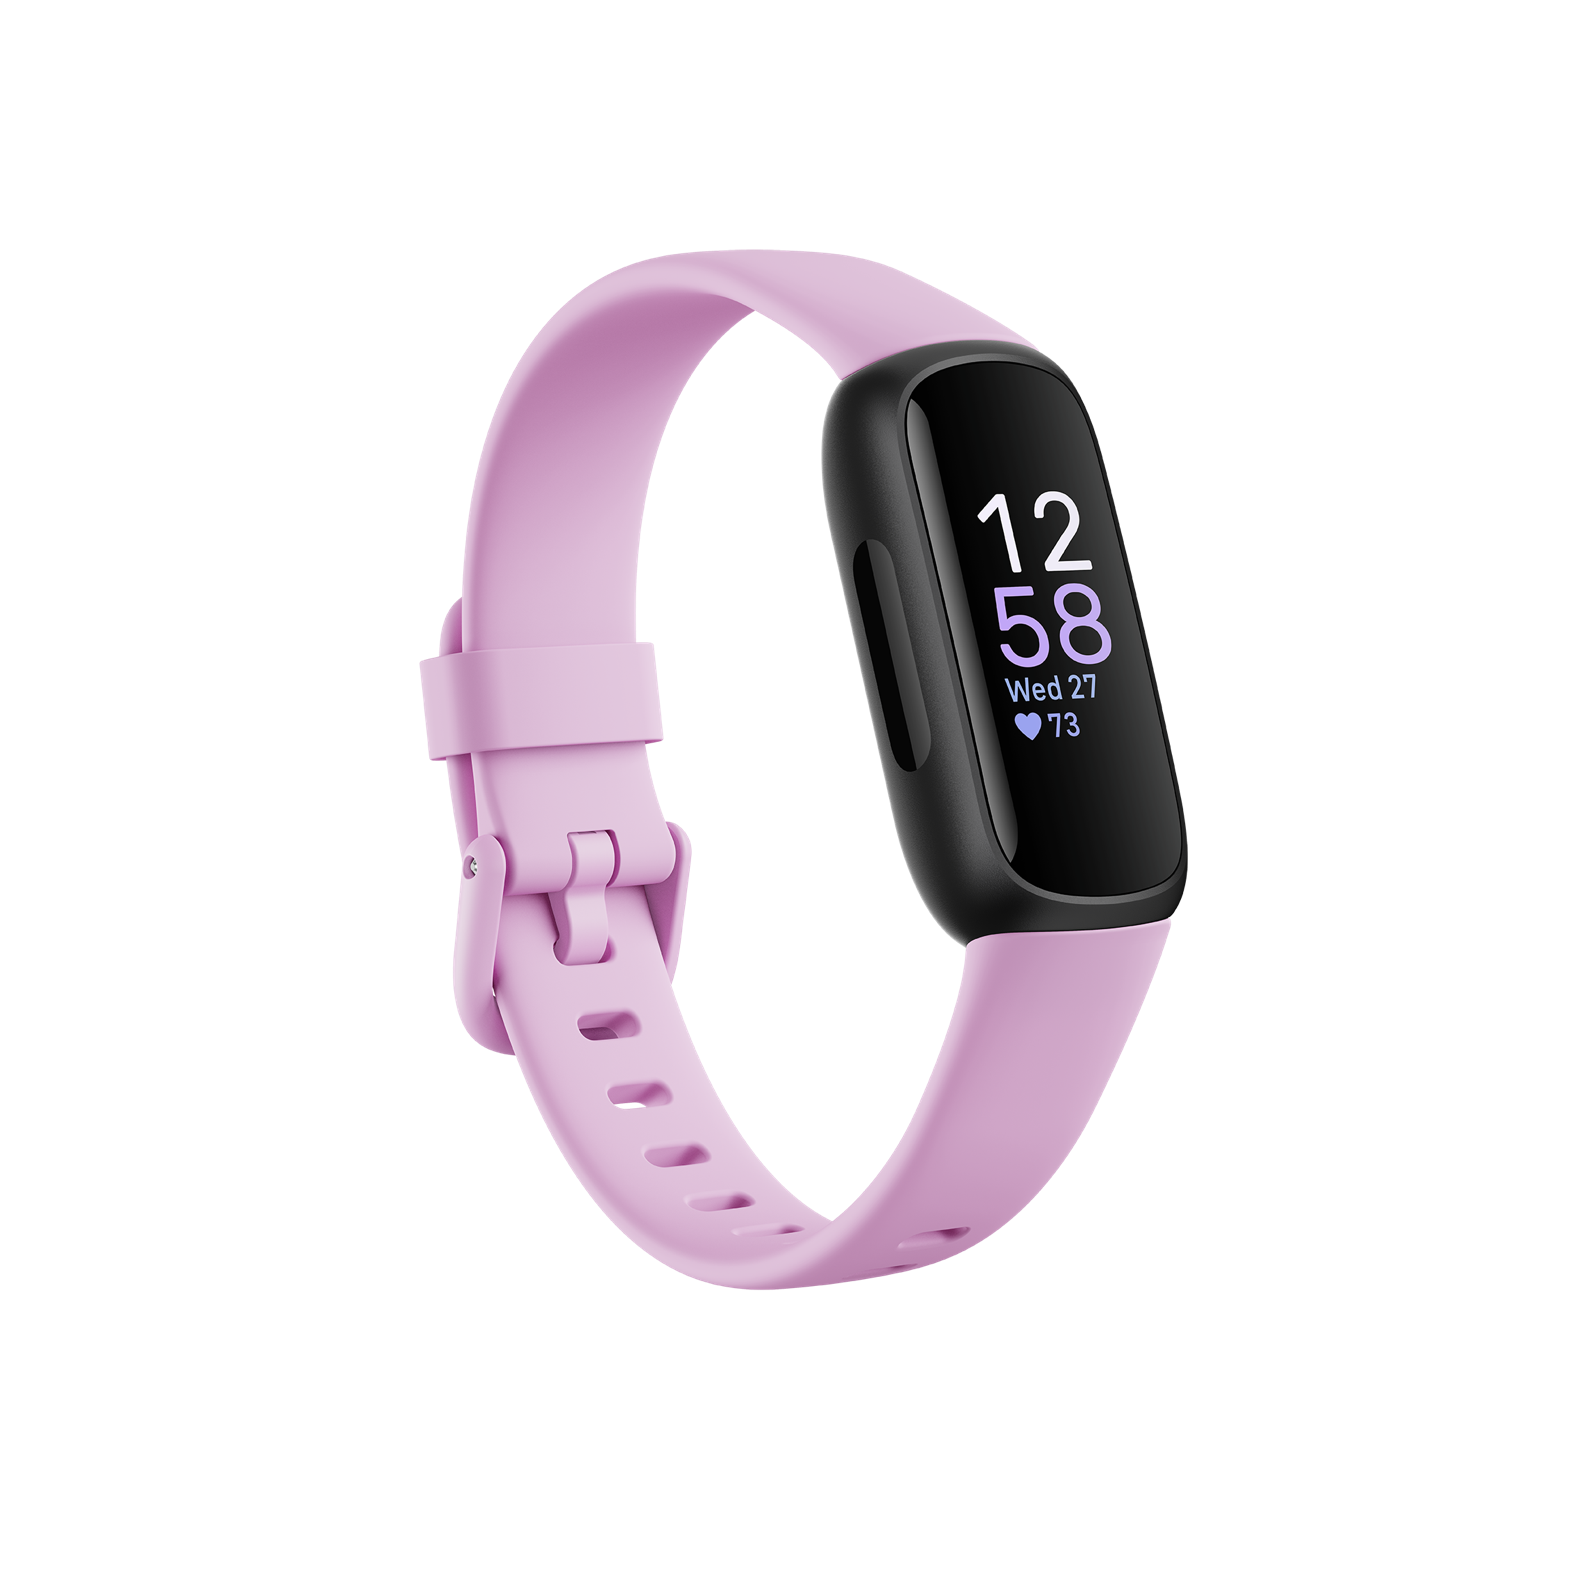 Heiligdom Gewoon beweeglijkheid Fitness + Wellness Tracker | Shop Fitbit Luxe